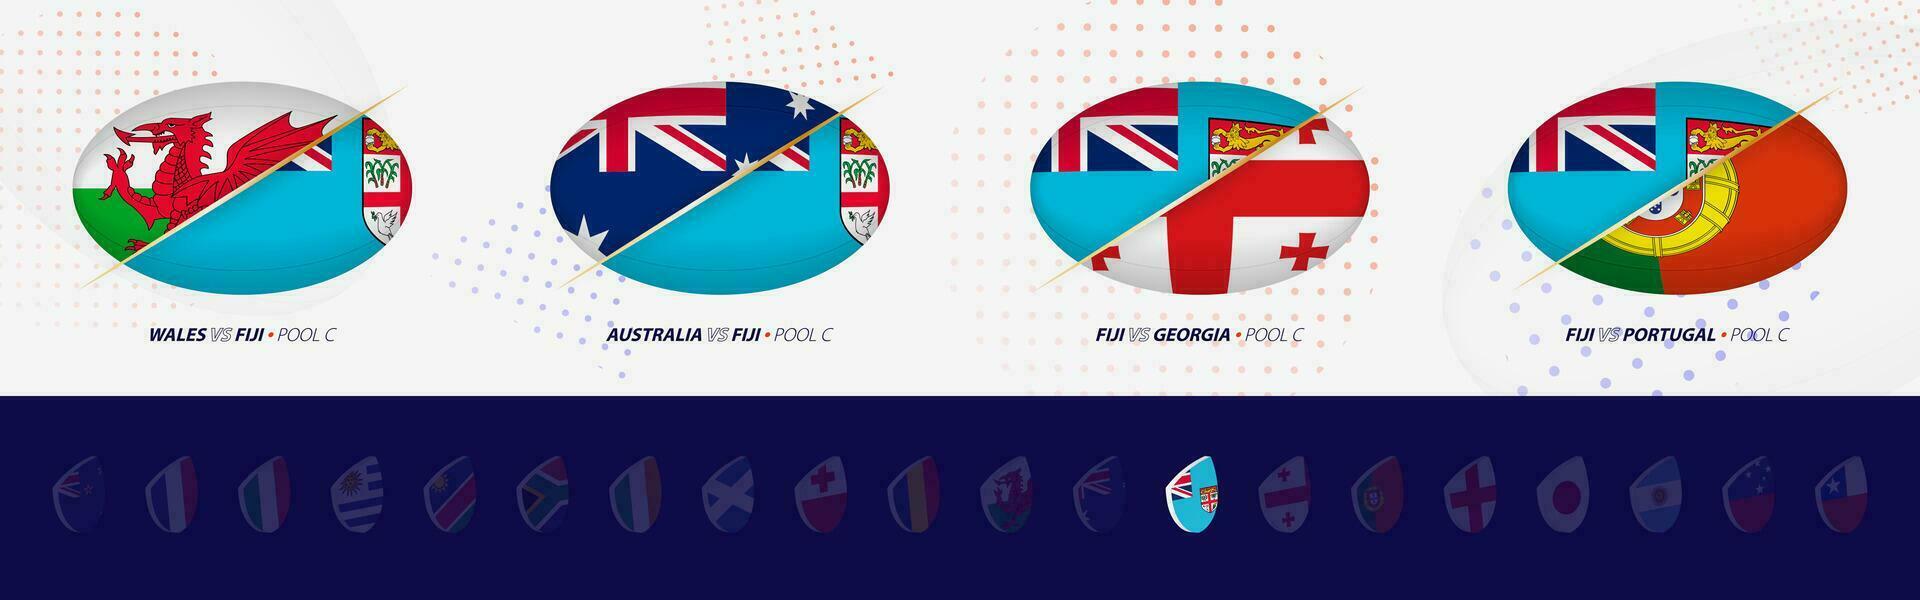 rugby competencia íconos de Fiji rugby nacional equipo, todas cuatro partidos icono en piscina. vector